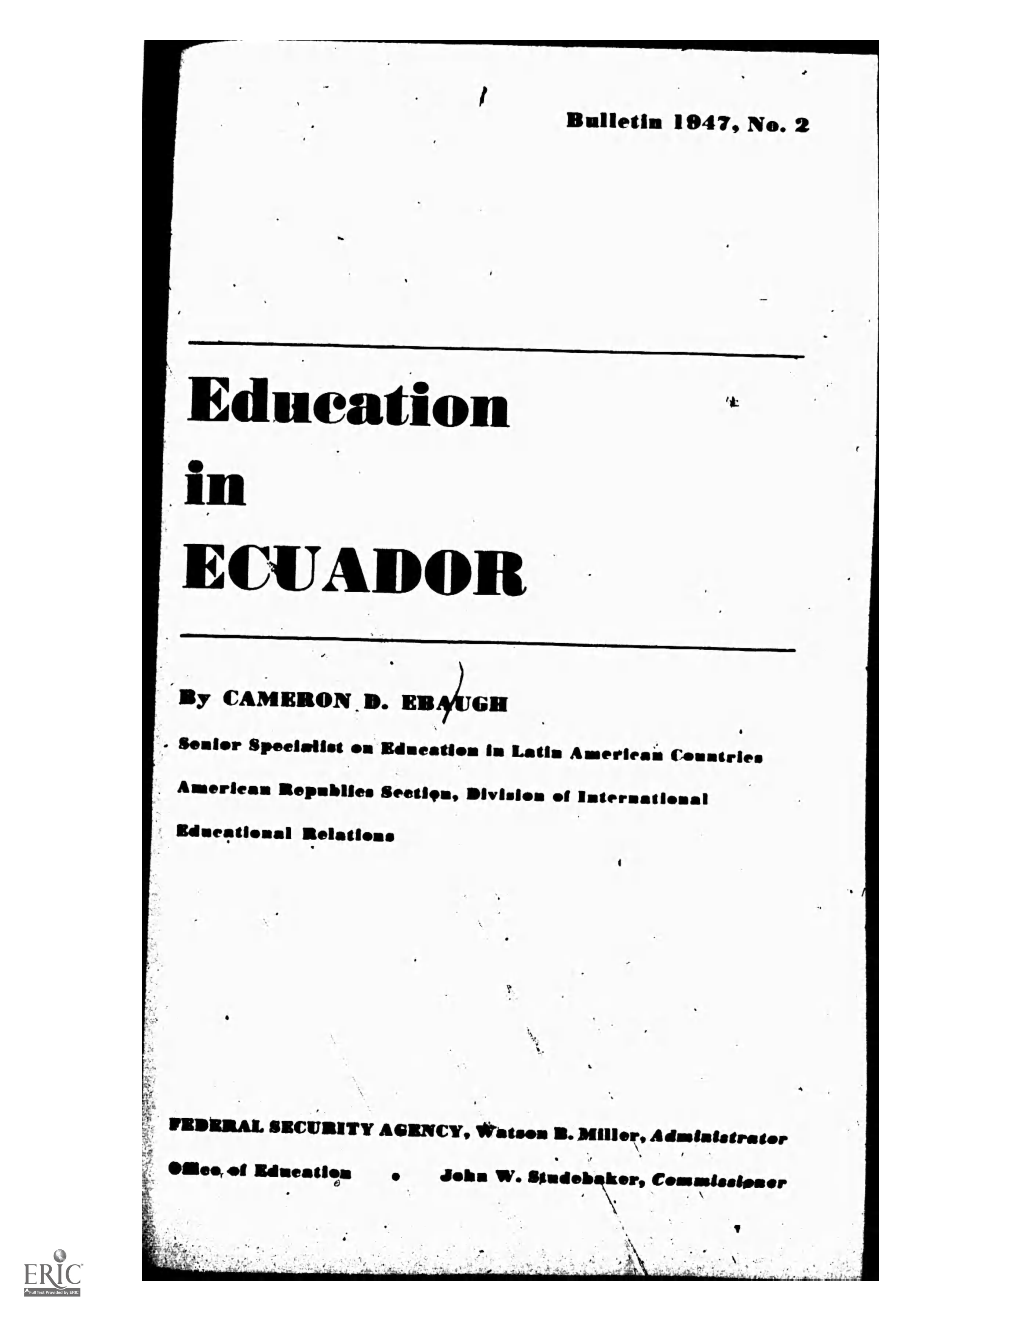 Education (41 in ECUADOR